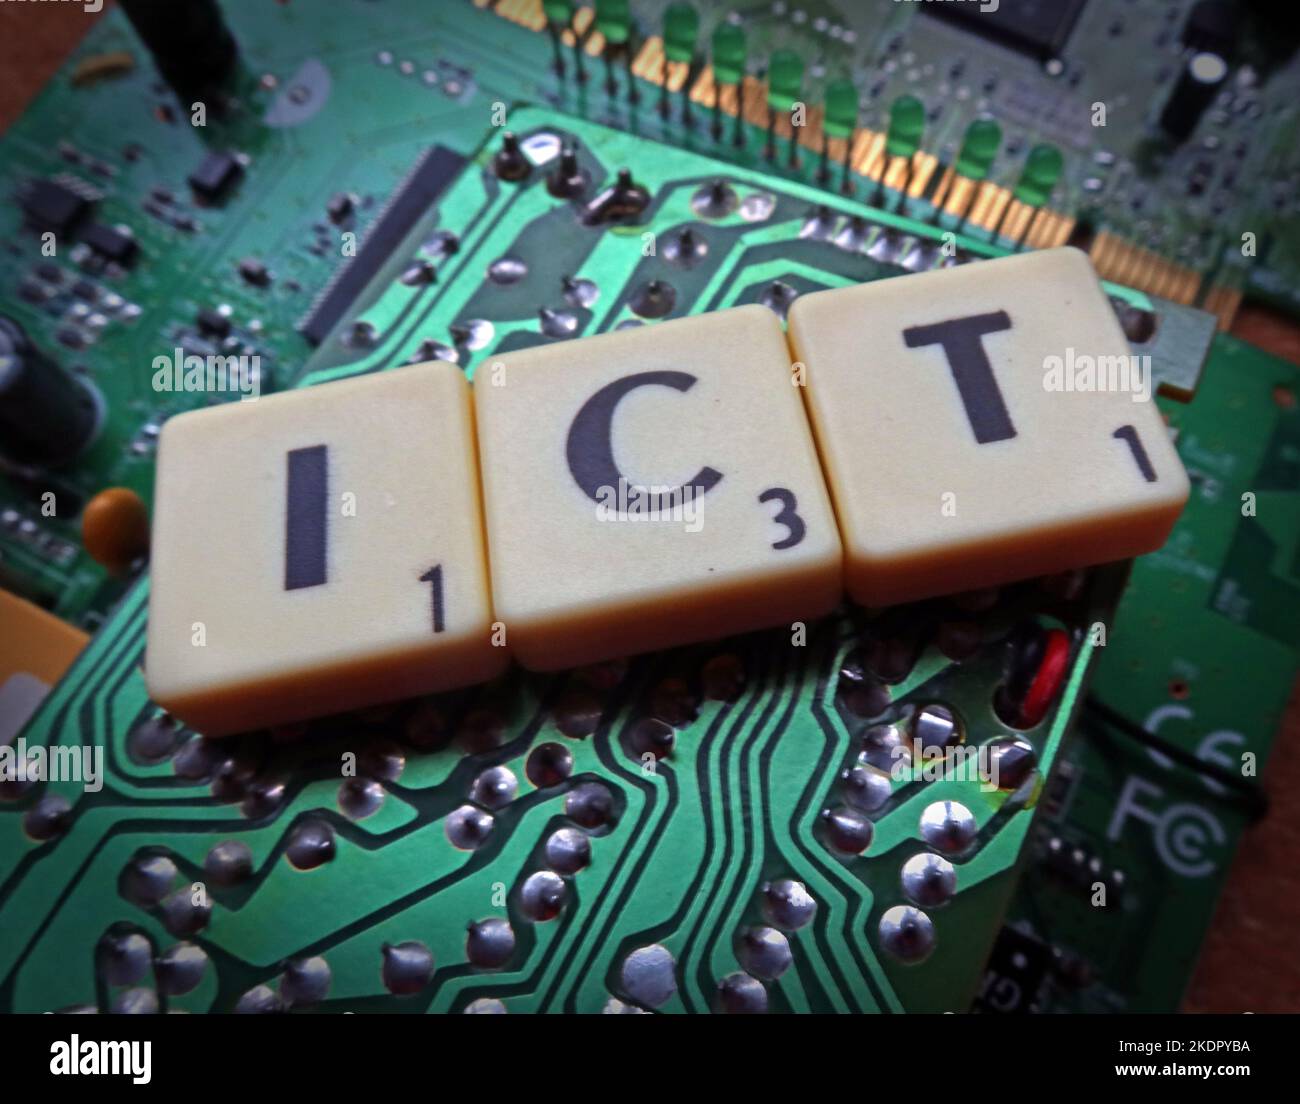 ICT - tecnologia dell'informazione e della comunicazione - Scrabble lettere / parole su un PCB elettronico Foto Stock